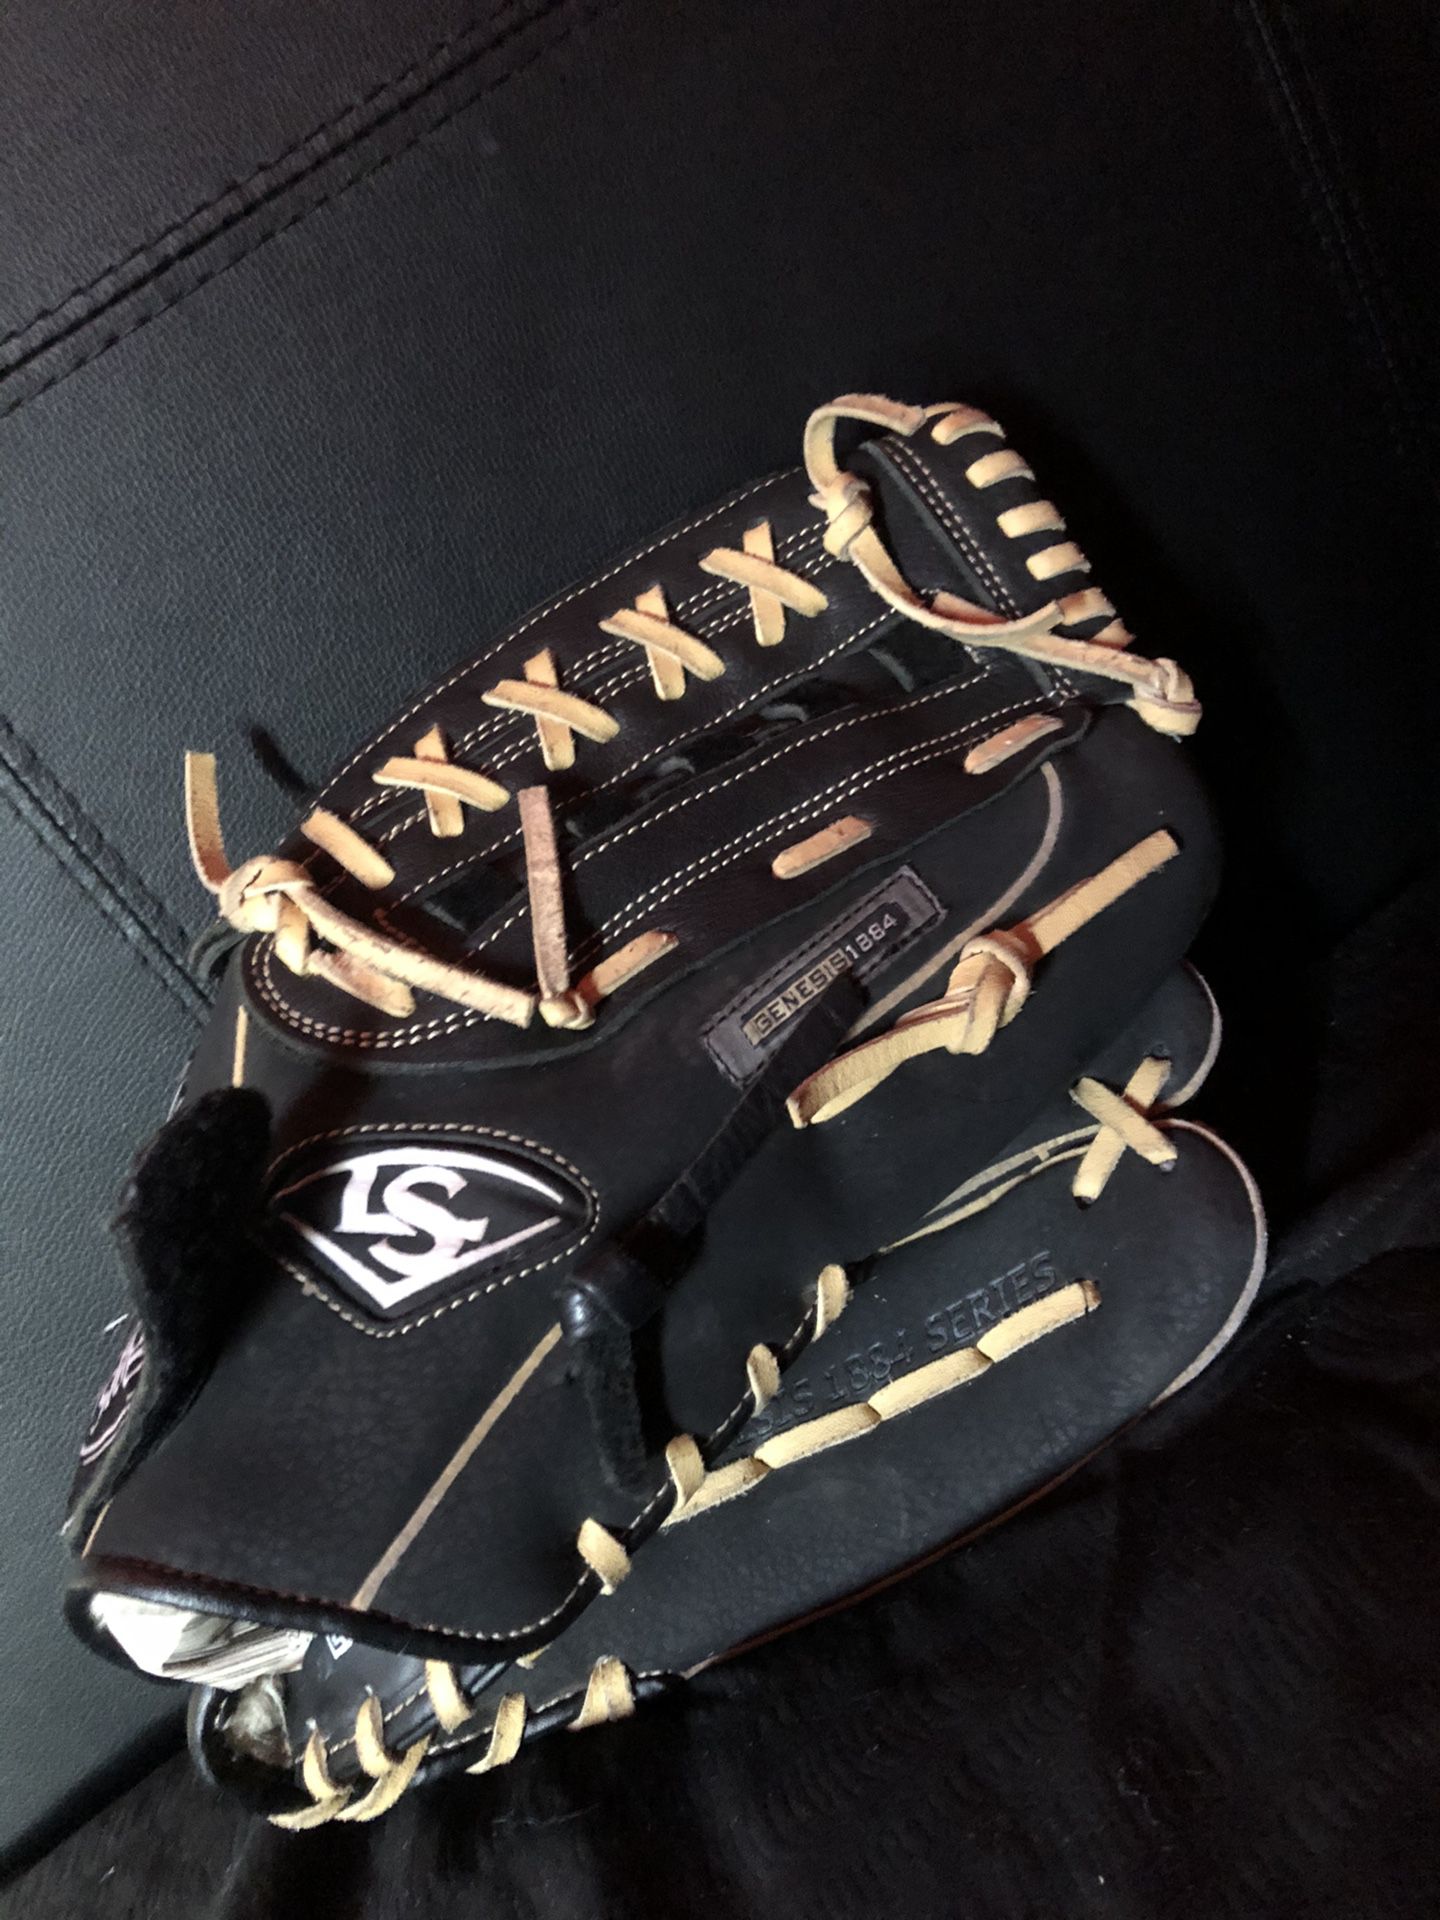 Louisville slugger baseball glove/size 13